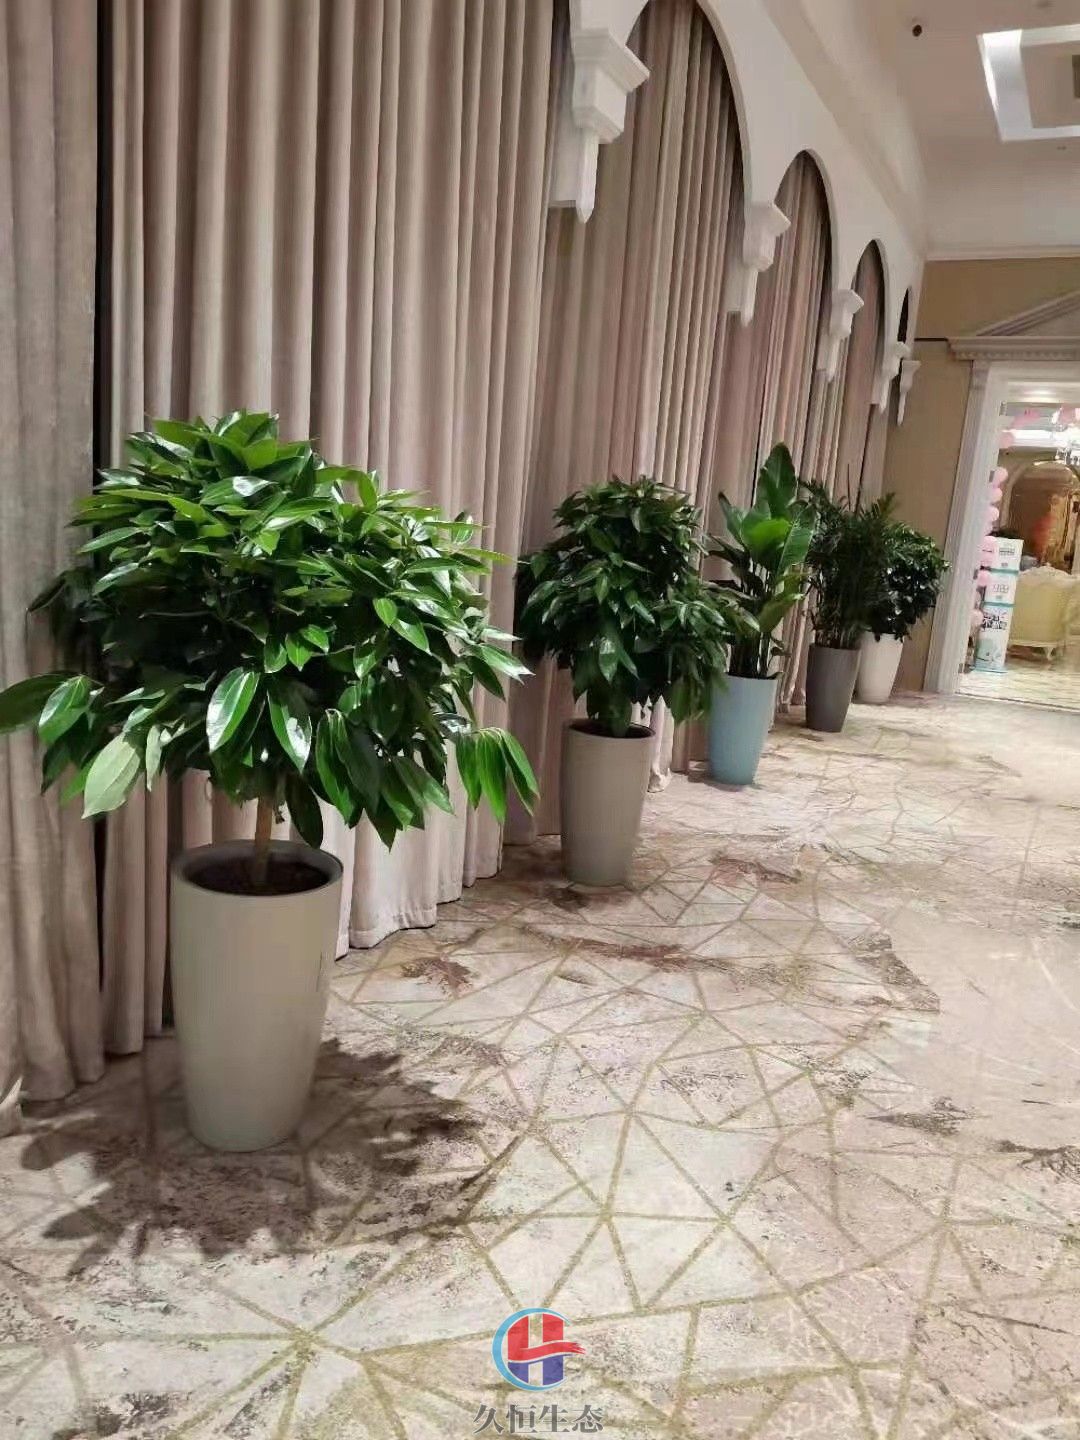 北仑酒店走廊花卉绿植摆放